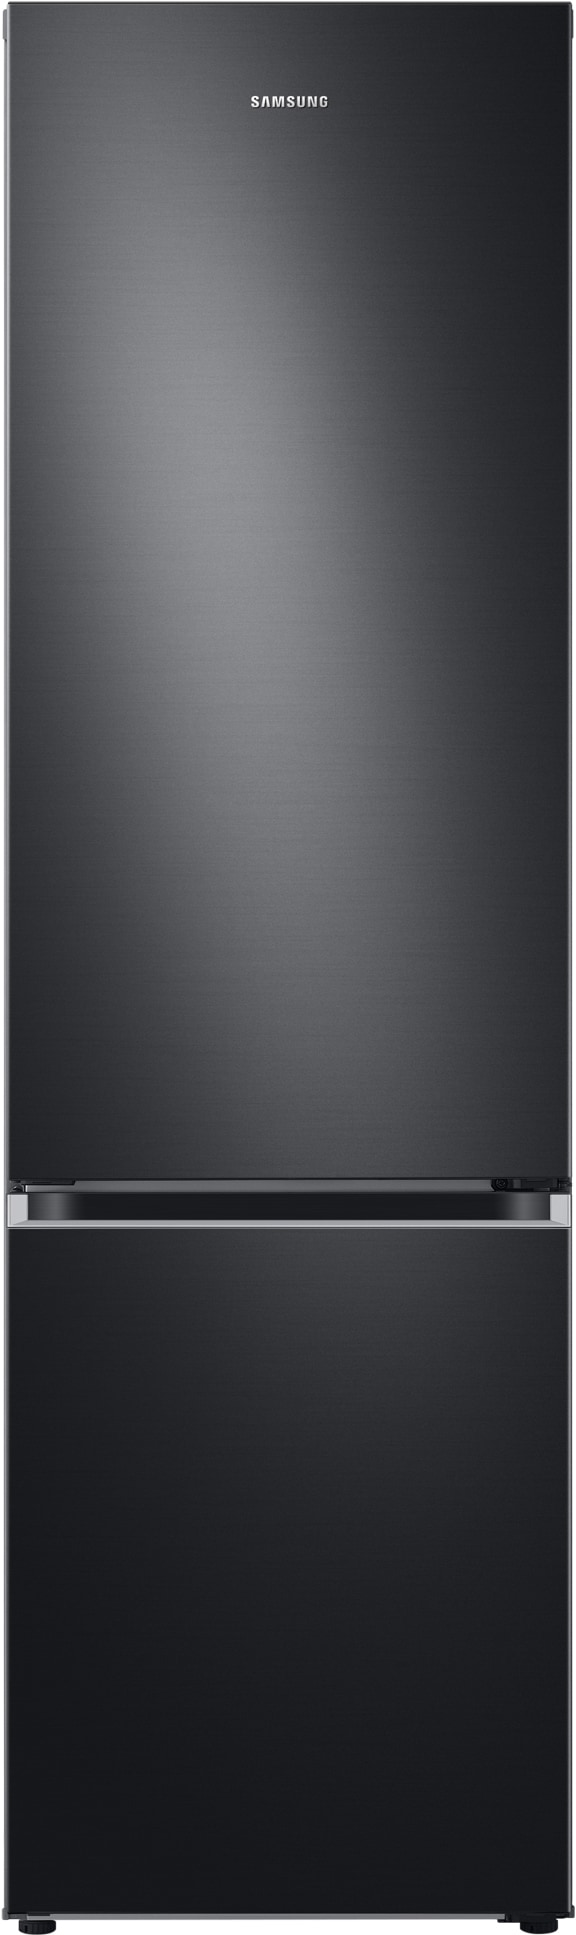 Samsung kjøleskap/fryser RL38T602FB1 (sort) - Elkjøp